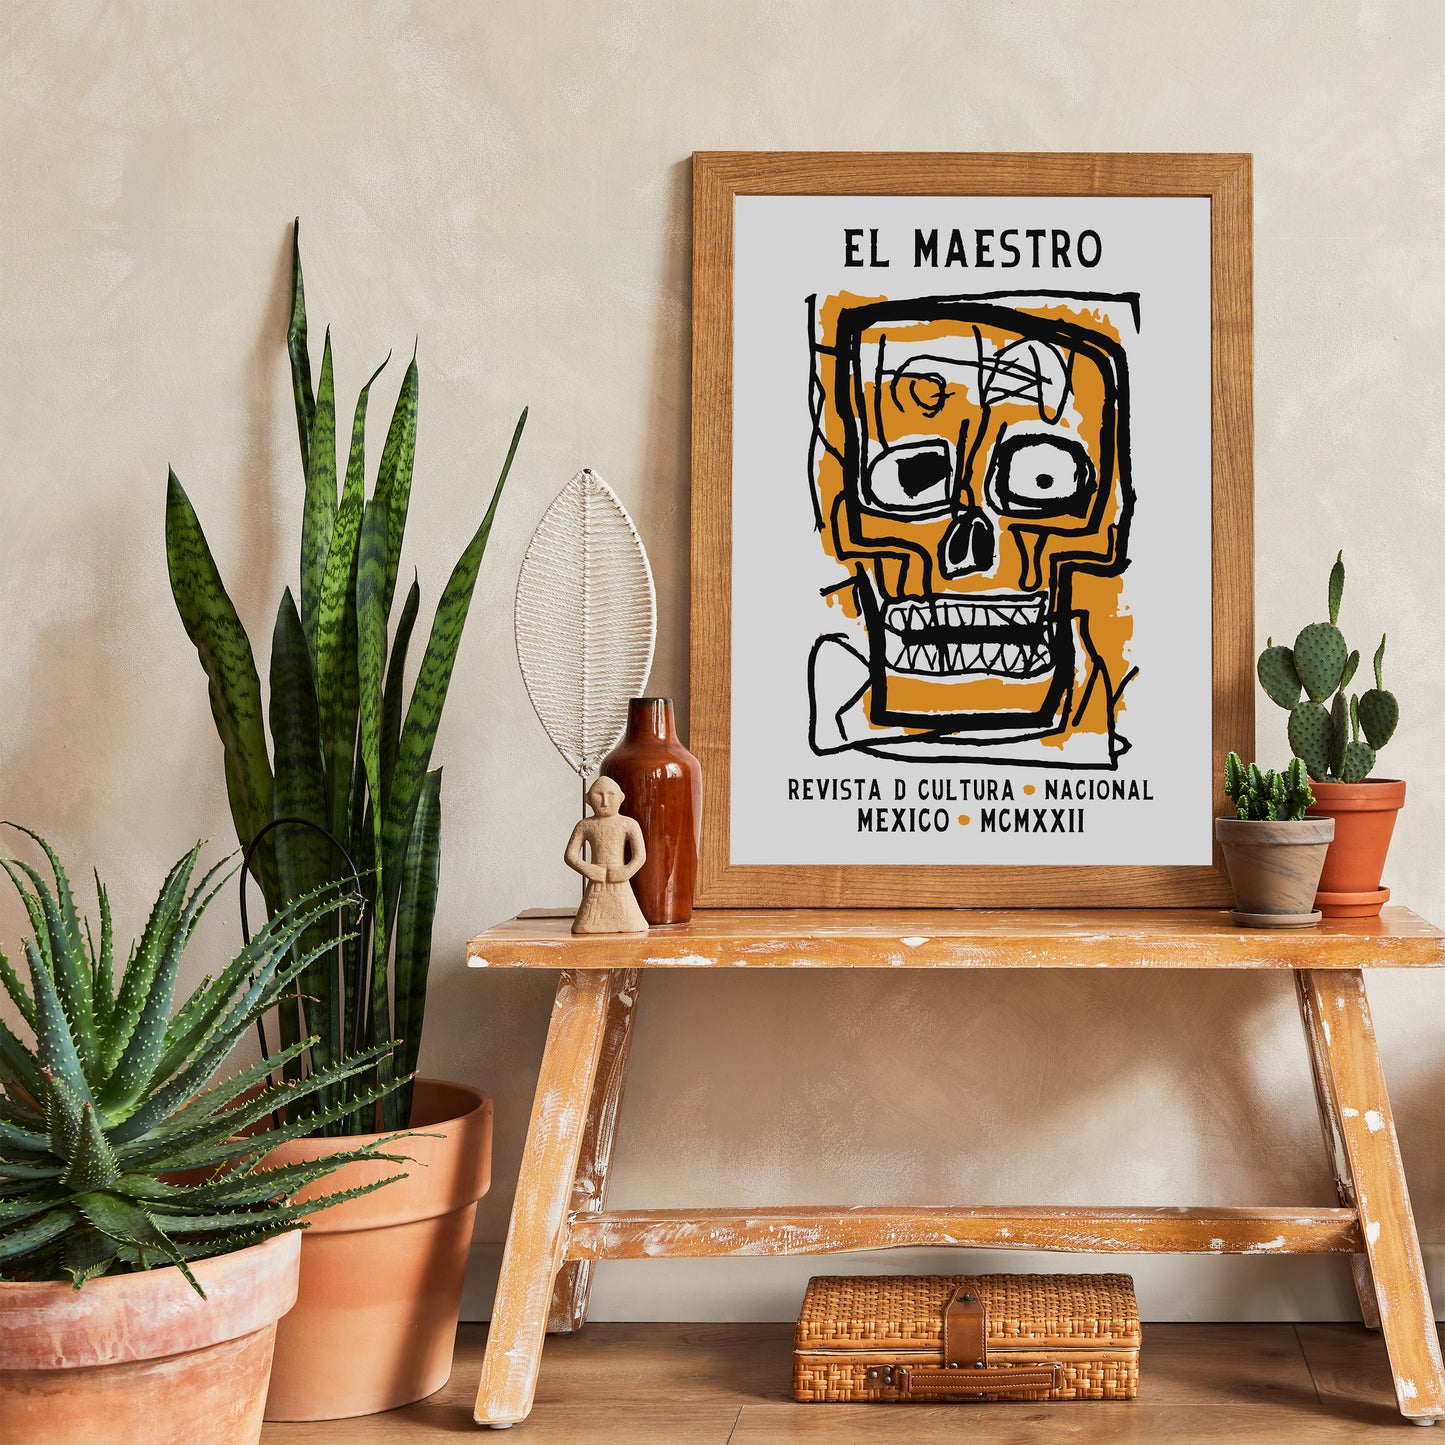 El Maestro Mexican Art Exhibition Poster